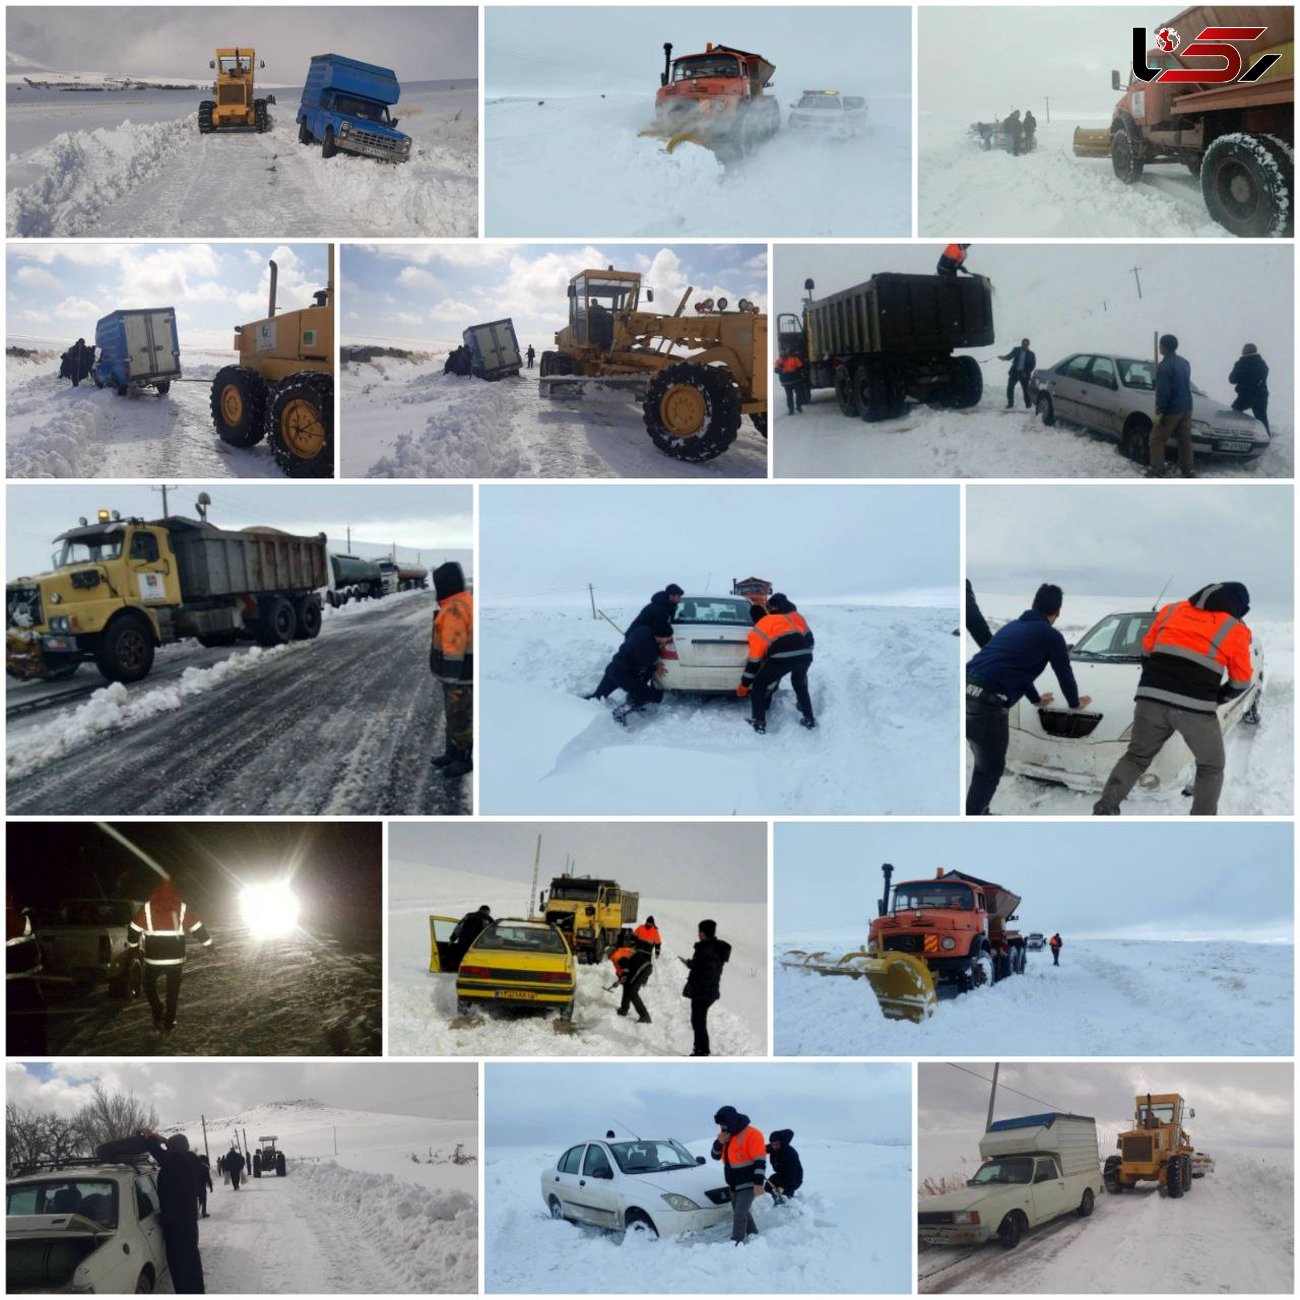 نجات رانندگان گرفتار شده در برف / به روایت تصویر  در هشترود